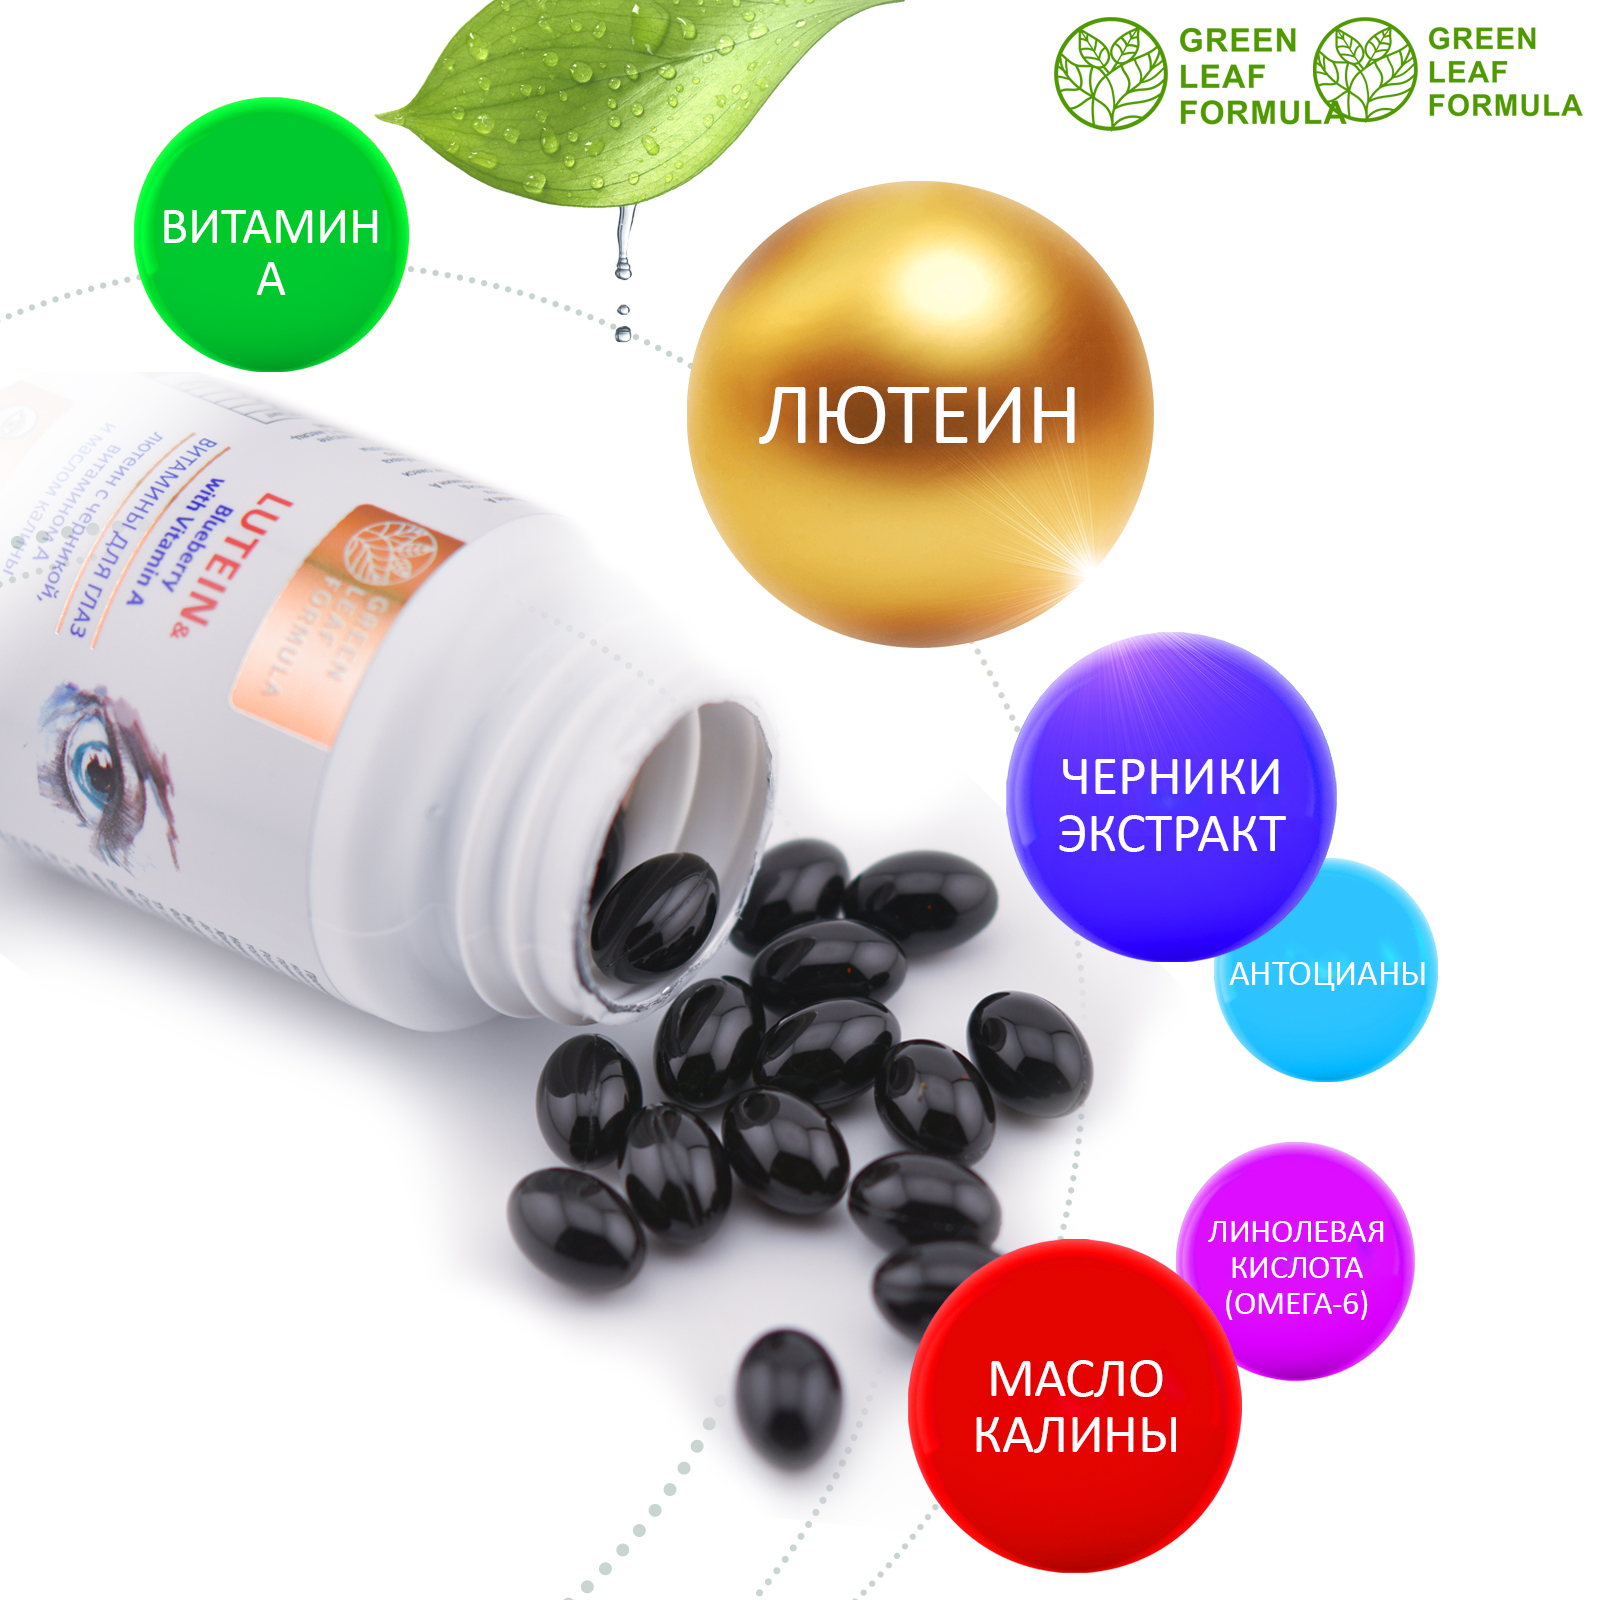 Витамины для глаз и зрения Green Leaf Formula лютеин комплекс черника витамин А астаксантин антиоксиданты 2 банки - фото 4